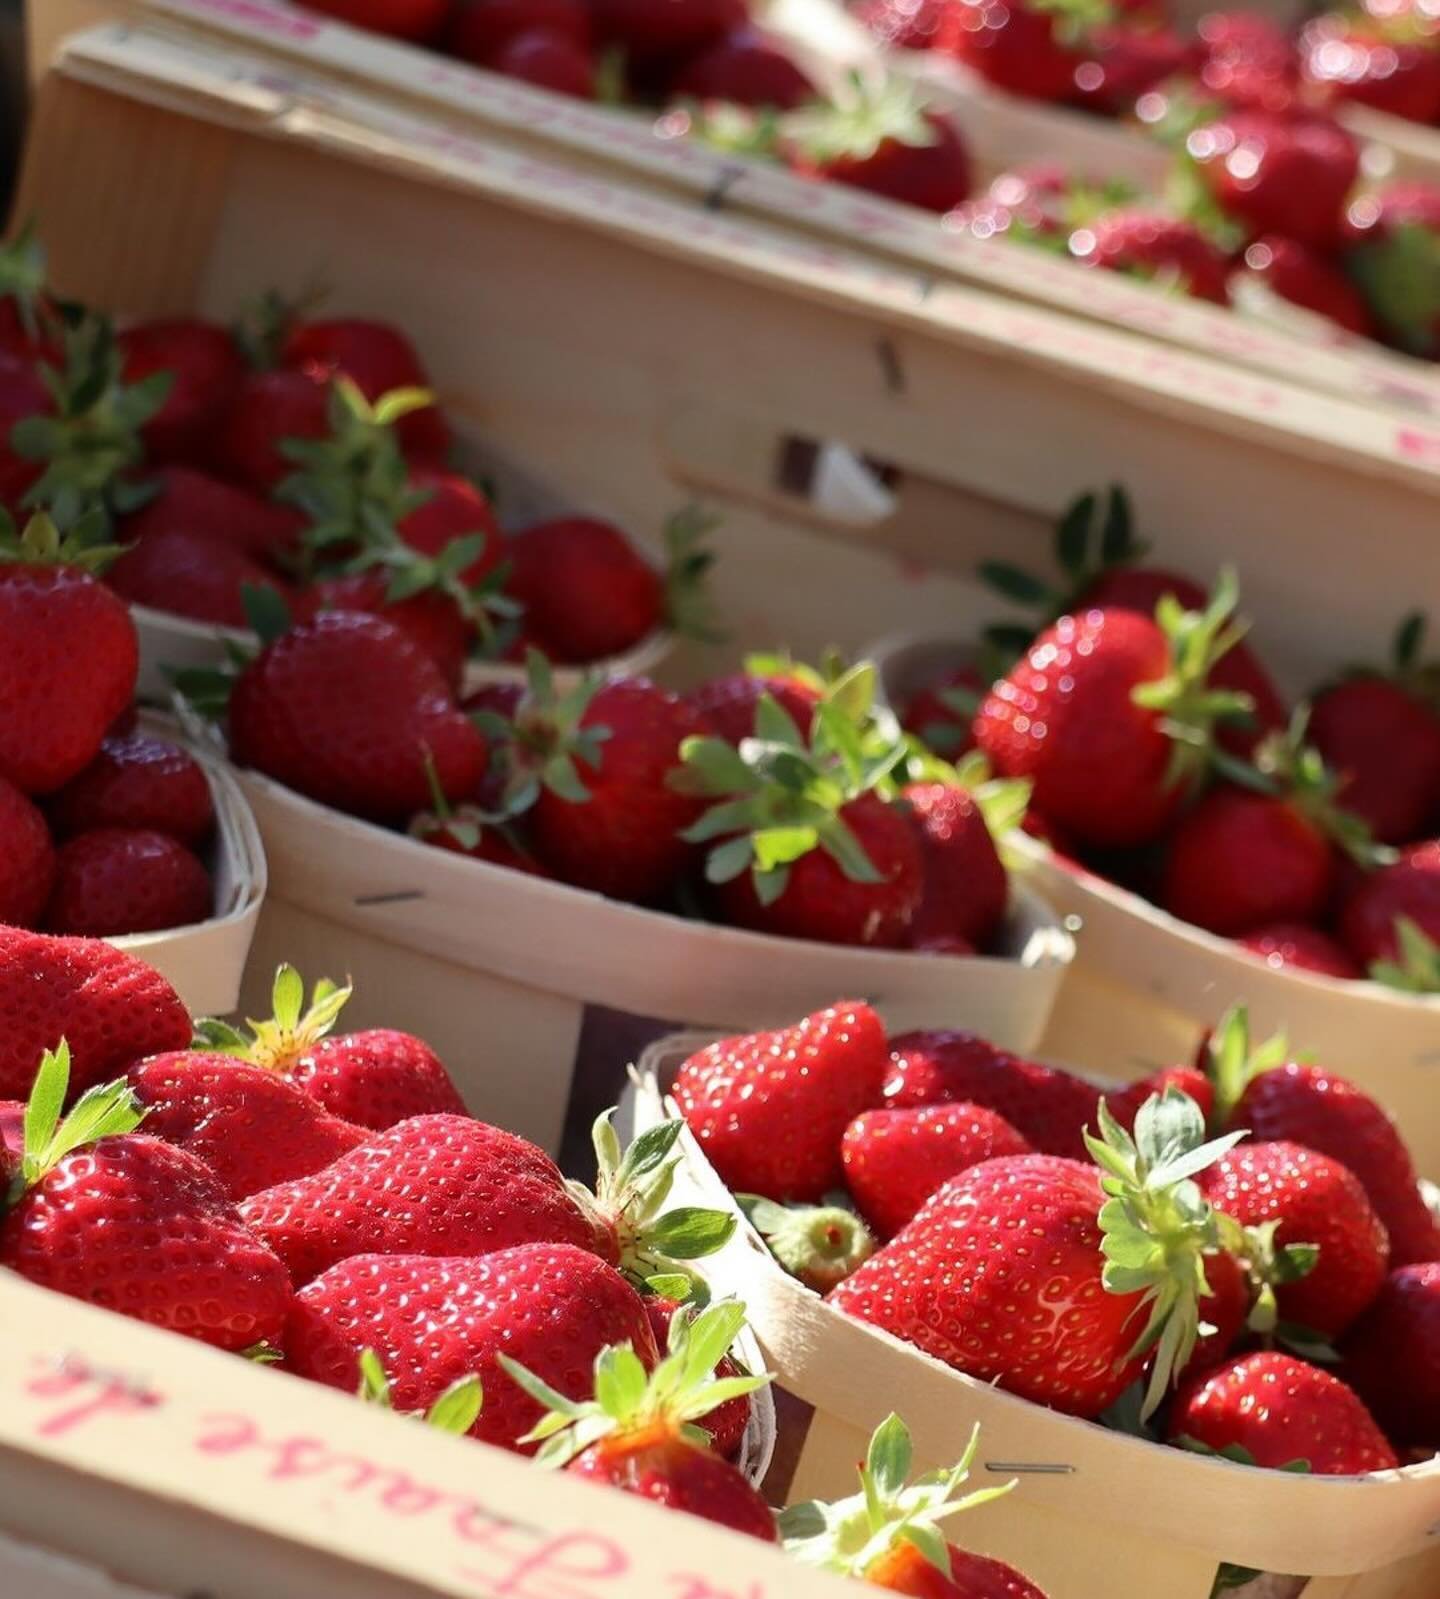 Strawberry season has begun in Provence! 

#Repost @ventouxprovencetourisme
・・・
🍓 OH MY... fraise ! 🍓 Cette semaine, elle est c&eacute;l&eacute;br&eacute;e de bien des mani&egrave;res !
🔸 vendredi 12 avril : d&eacute;jeuner &ldquo;Pause Comtadine 